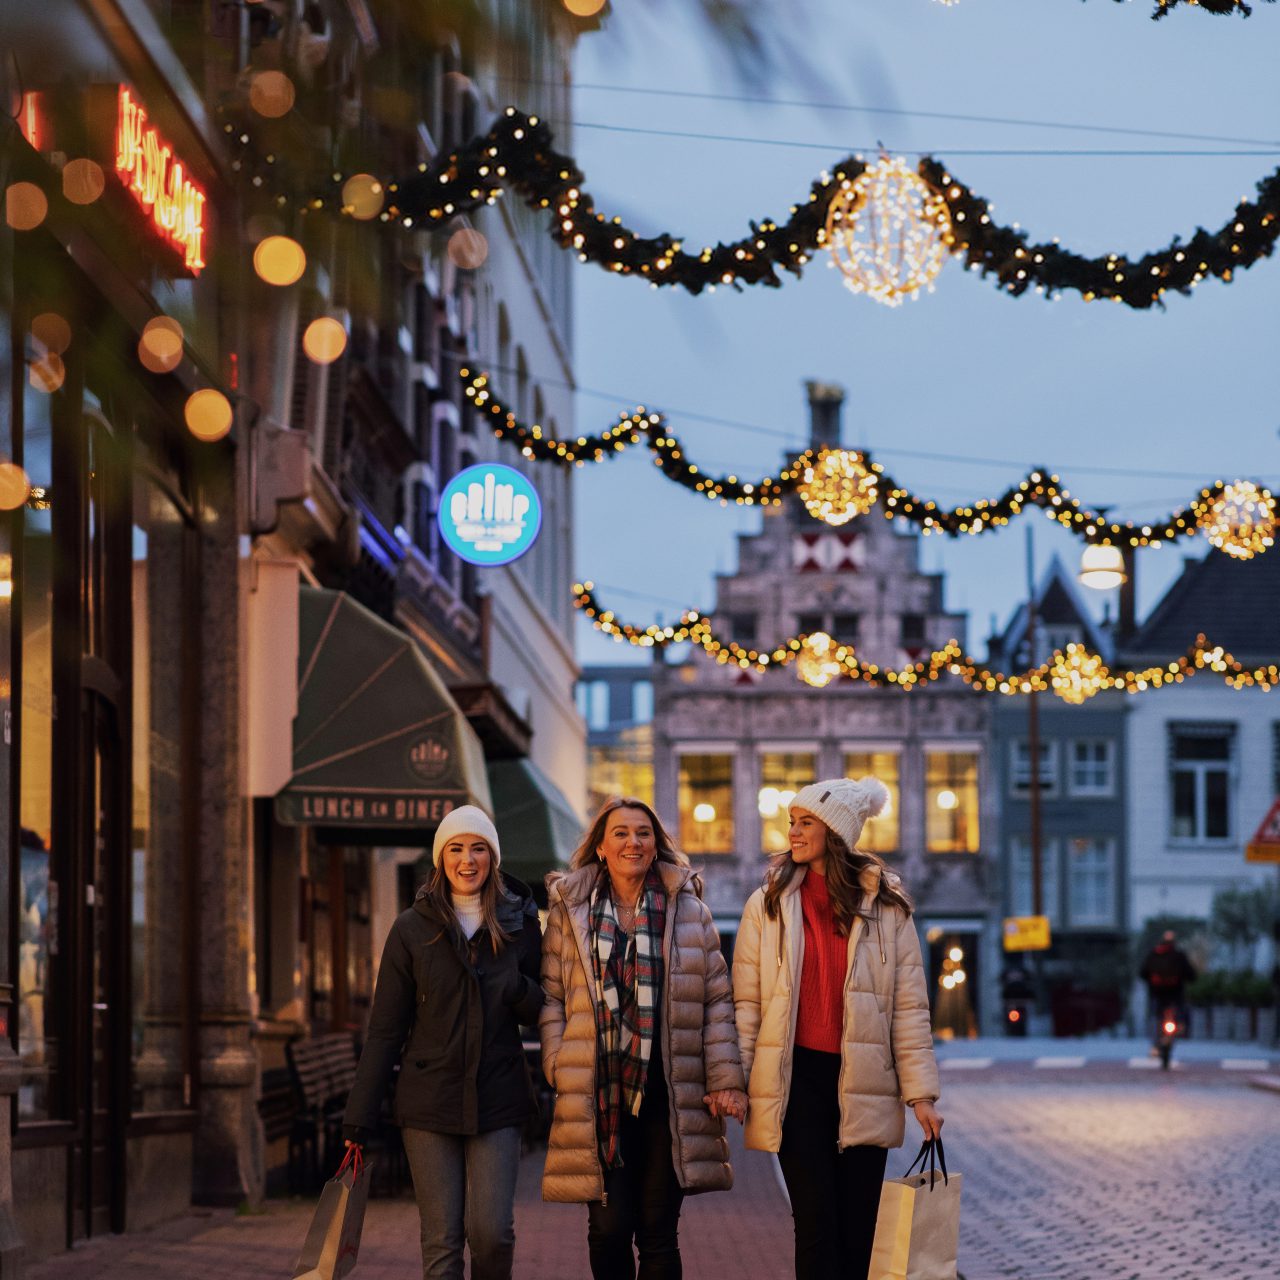 Winters winkelen in Dordrecht met kerstverlichting.